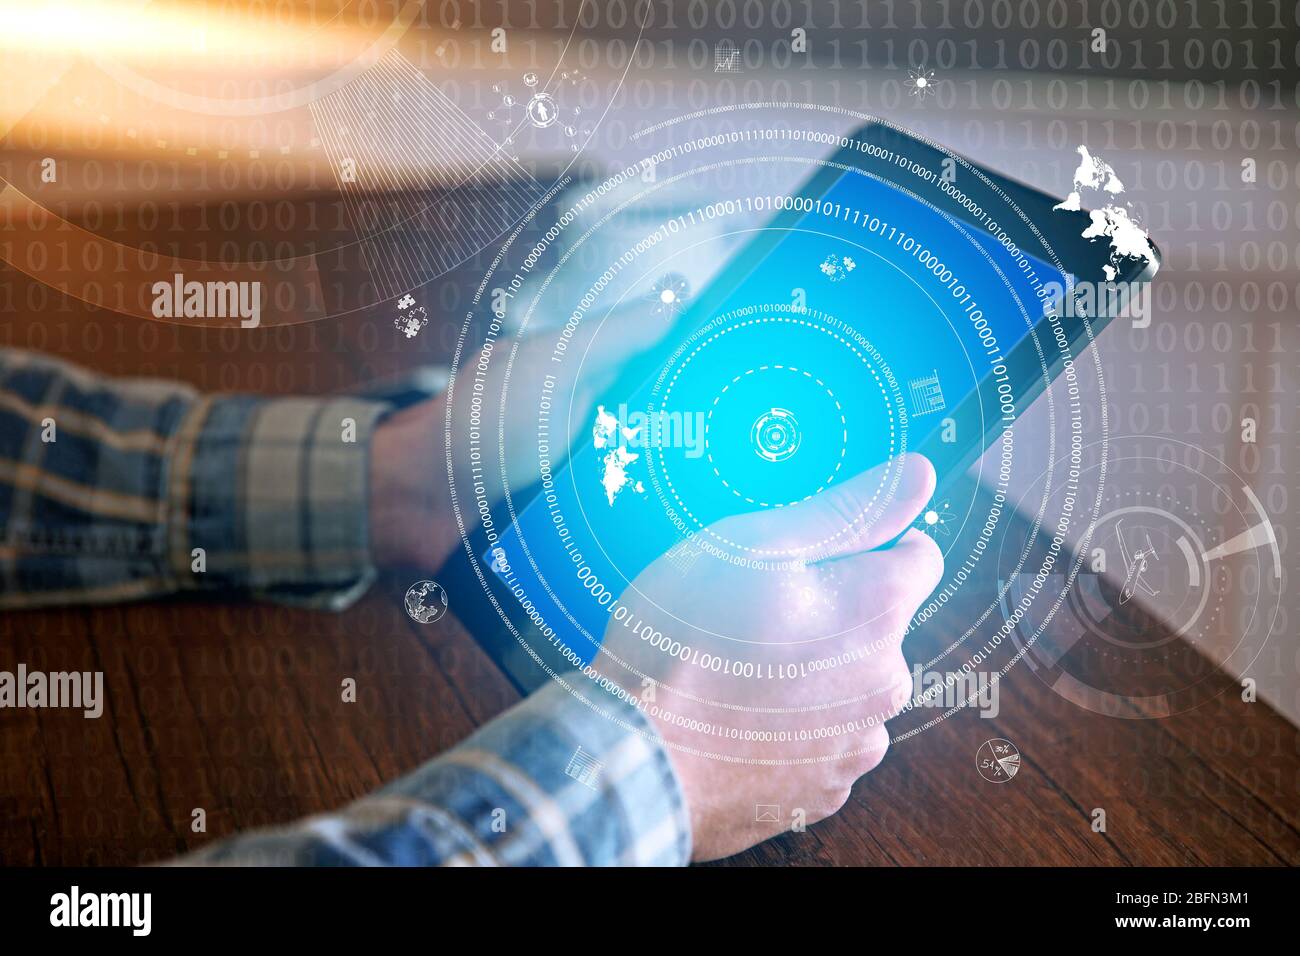 Mann Mit Tablet Vor High Tech Hintergrund Stockfotografie Alamy